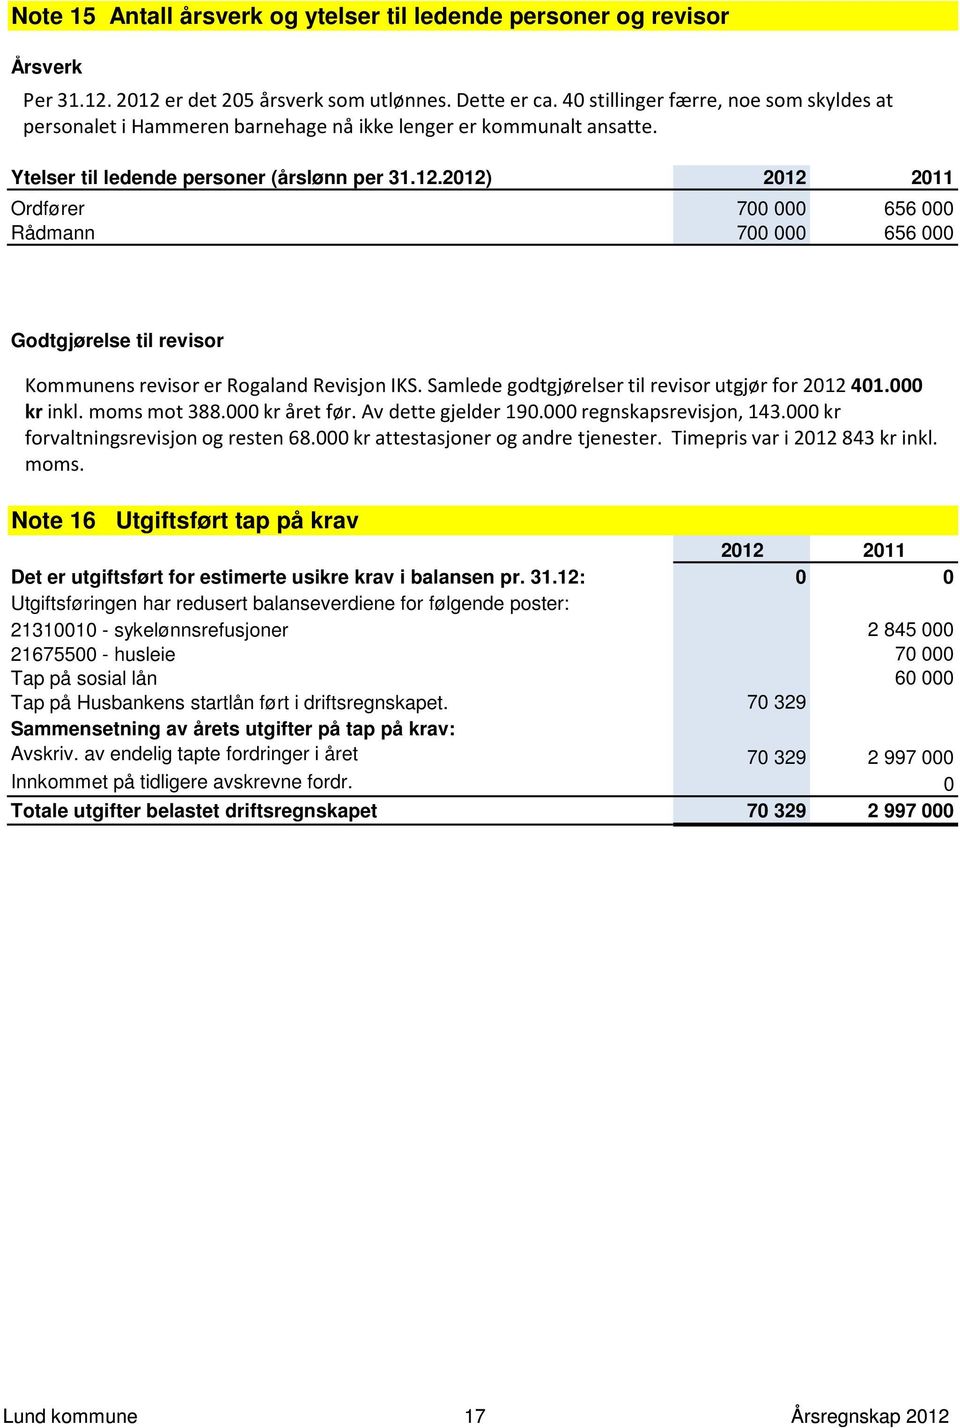 2012) 2012 2011 Ordfører 700 000 656 000 Rådmann 700 000 656 000 Godtgjørelse til revisor Kommunens revisor er Rogaland Revisjon IKS. Samlede godtgjørelser til revisor utgjør for 2012 401.000 kr inkl.